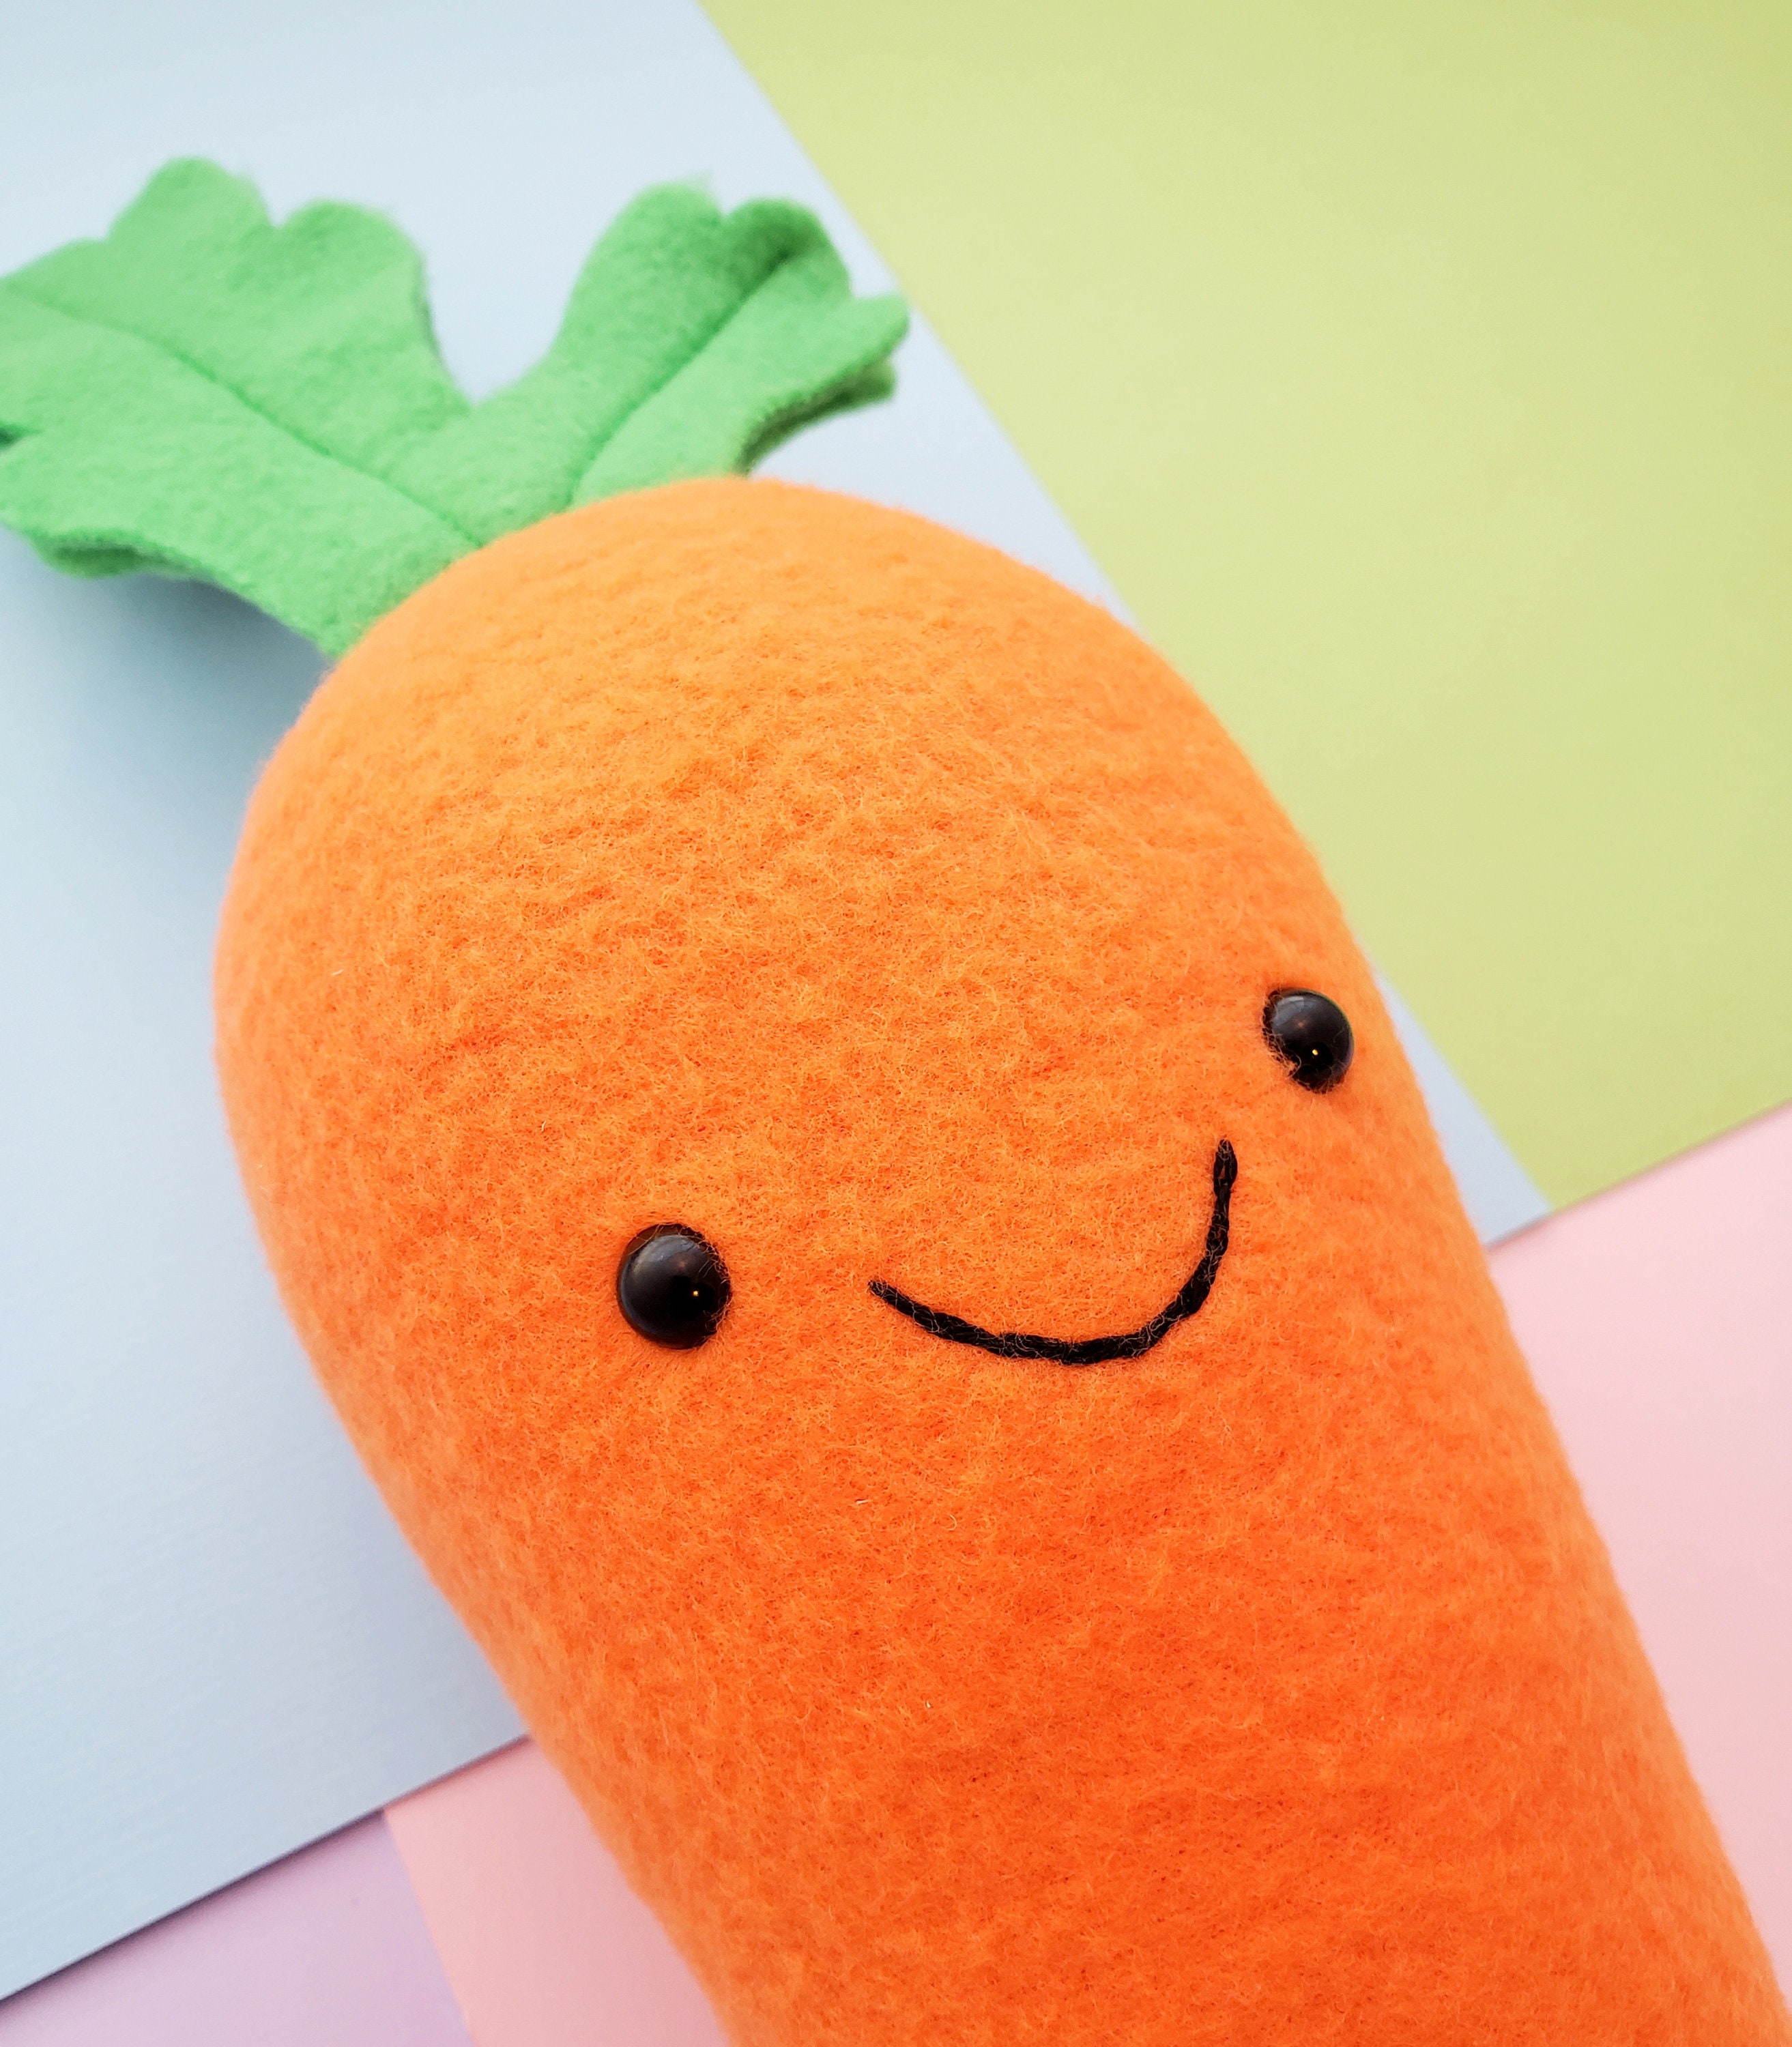 Veggie Plush Toys Healthy Games for Kids Carrie Carrot Garden Hero